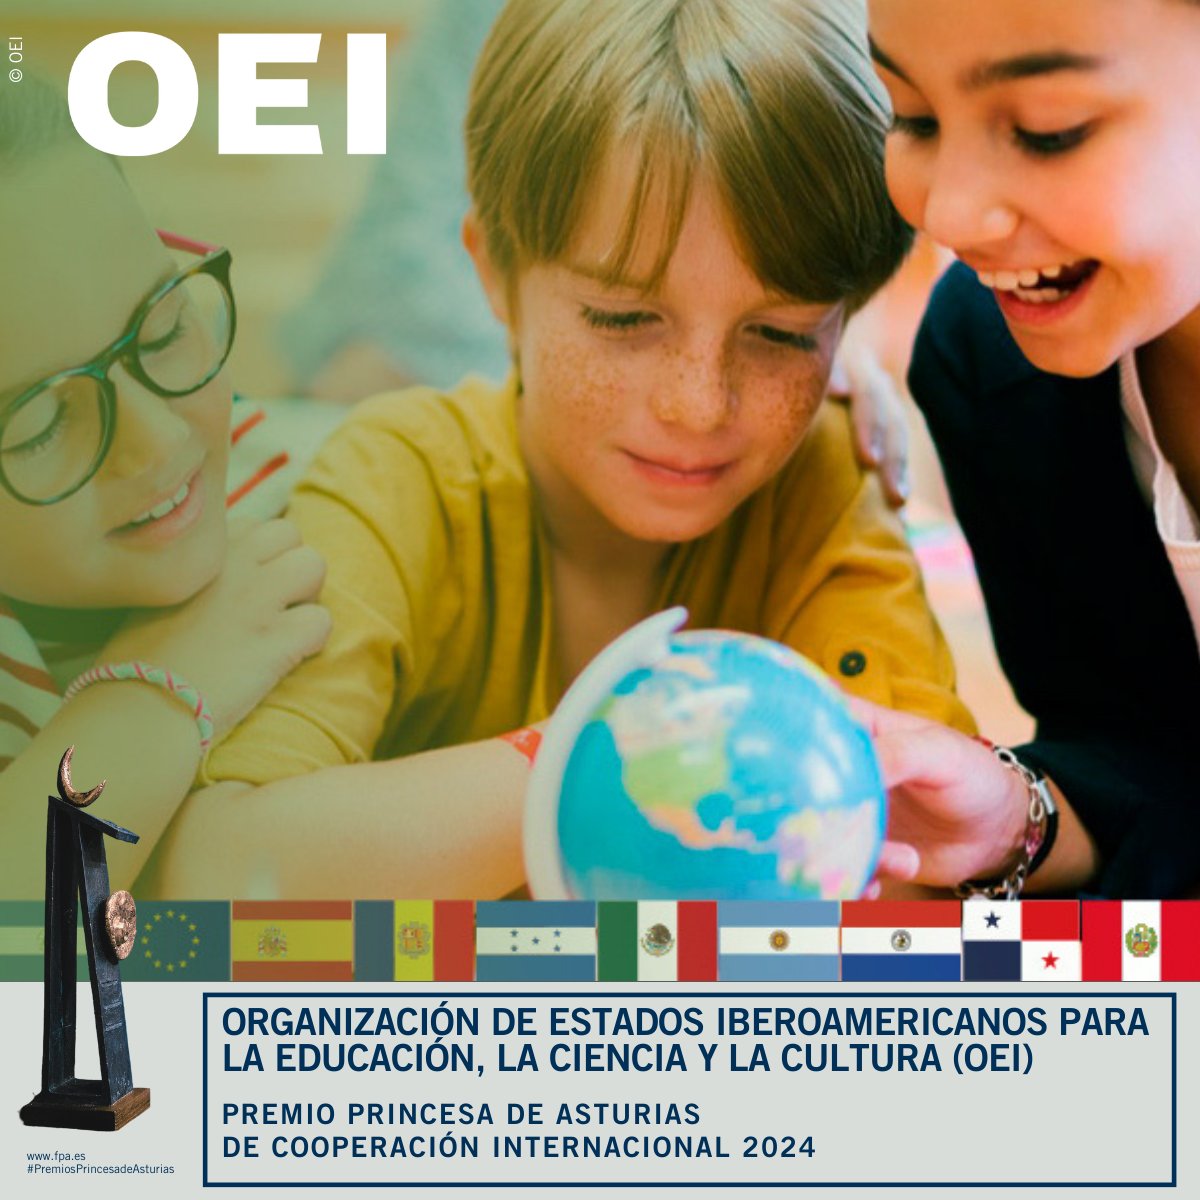 #ÚLTIMAHORA: La Organización de Estados Iberoamericanos para la Educación, la Ciencia y la Cultura (OEI) ha sido galardonada con el Premio Princesa de Asturias de Cooperación Internacional 2024. #PremiosPrincesadeAsturias @EspacioOEI